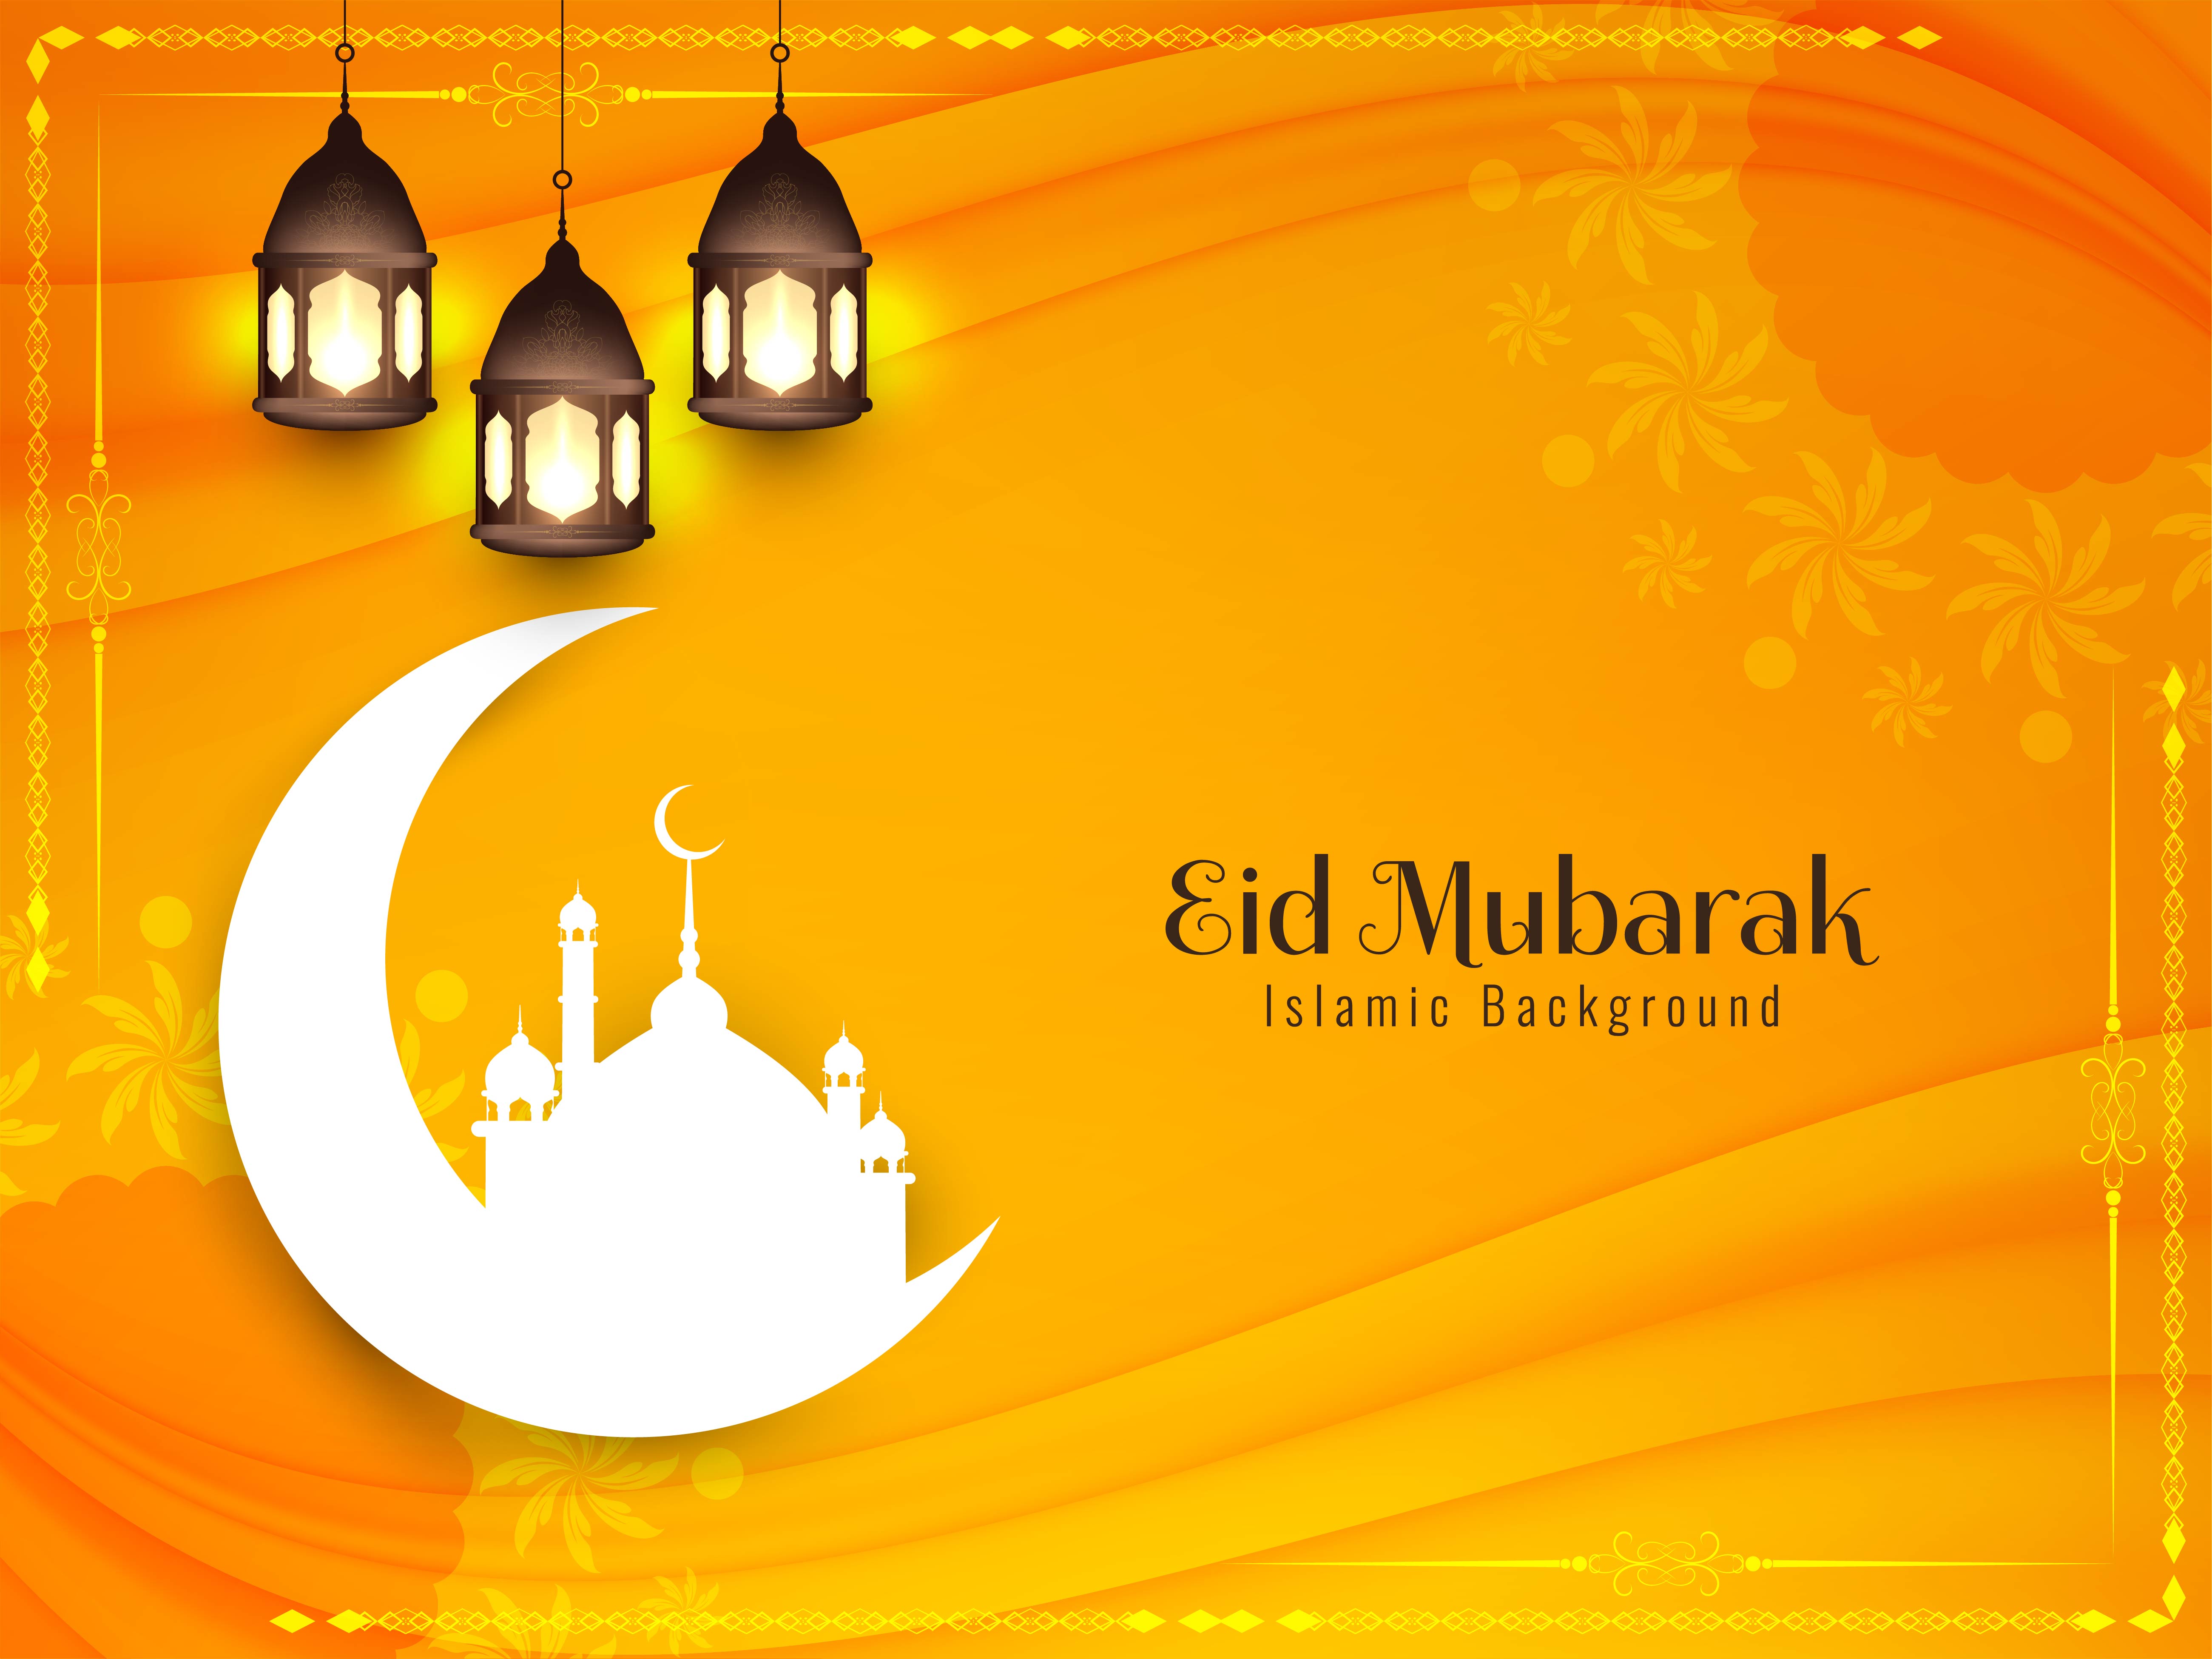 Hình nền Eid Mubarak màu sắc Hồi giáo trừu tượng - vector art: Bạn đang tìm kiếm một hình ảnh tuyệt đẹp dành cho lễ Eid Mubarak? Hãy khám phá bộ vector art này với hình ảnh trừu tượng và sắc màu Hồi giáo sẽ mang đến cho bạn một bầu không khí tràn đầy niềm vui và hạnh phúc.